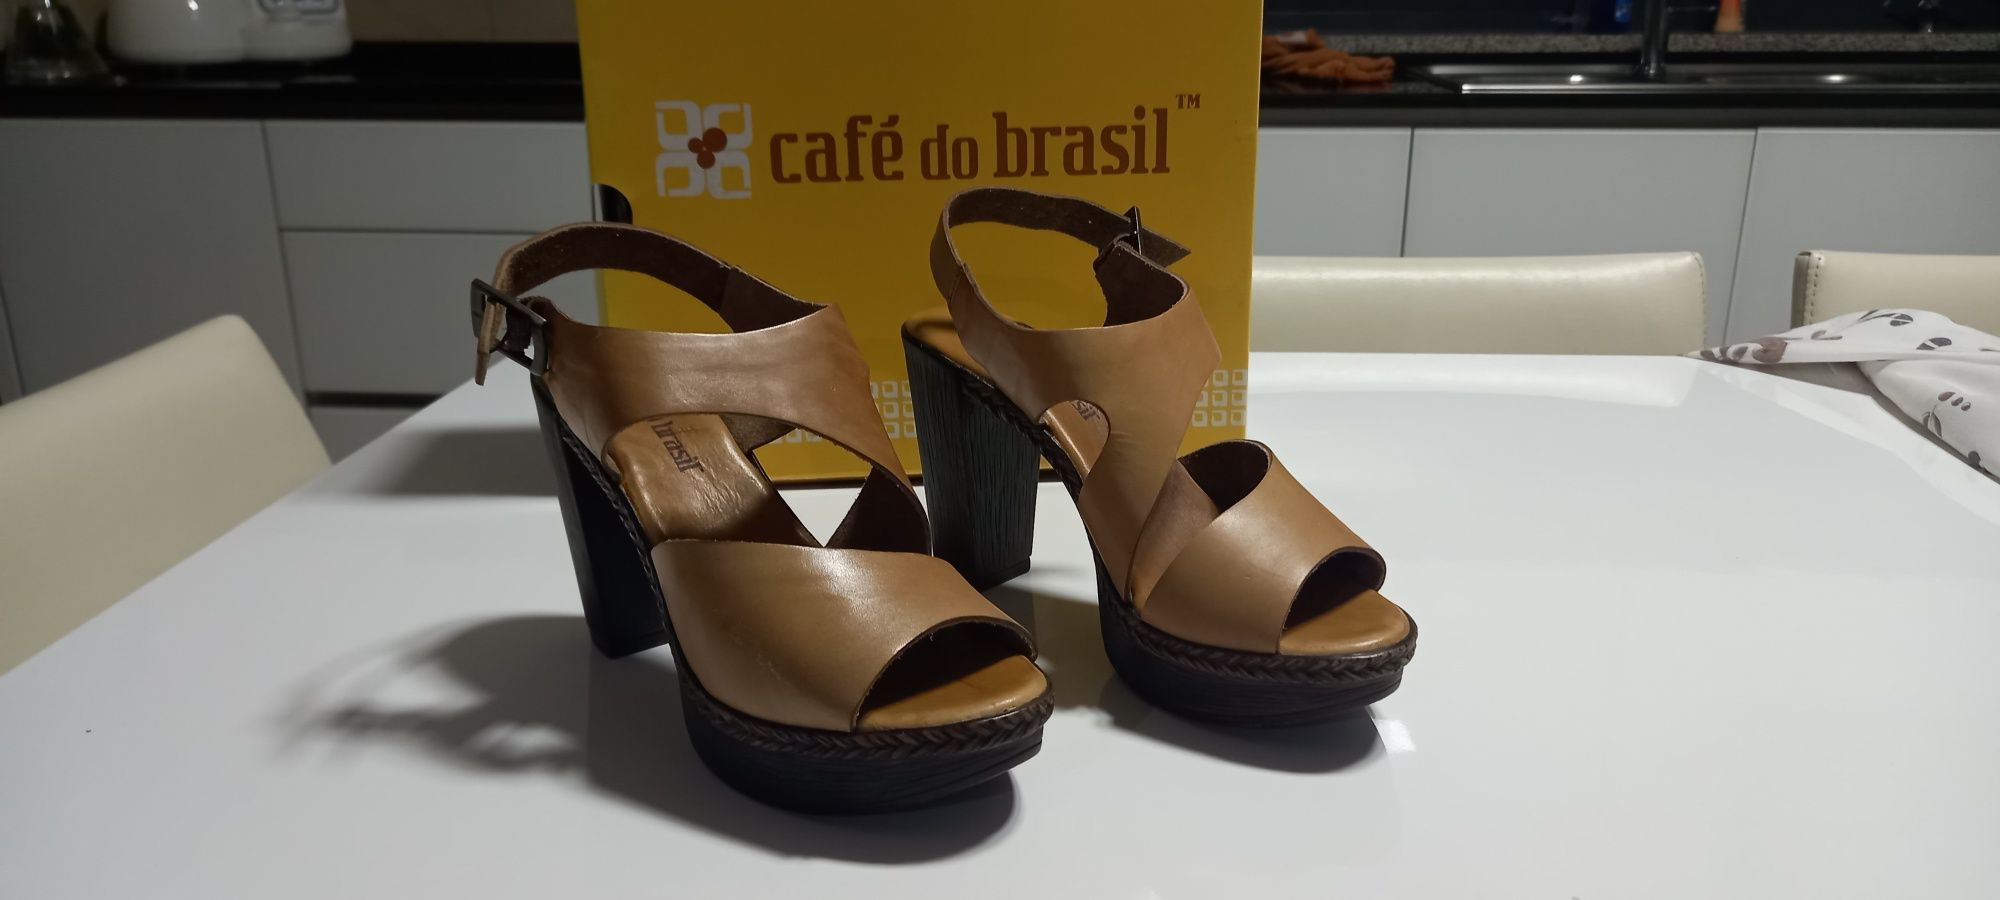 Sandálias Compensadas "Café do Brasil"